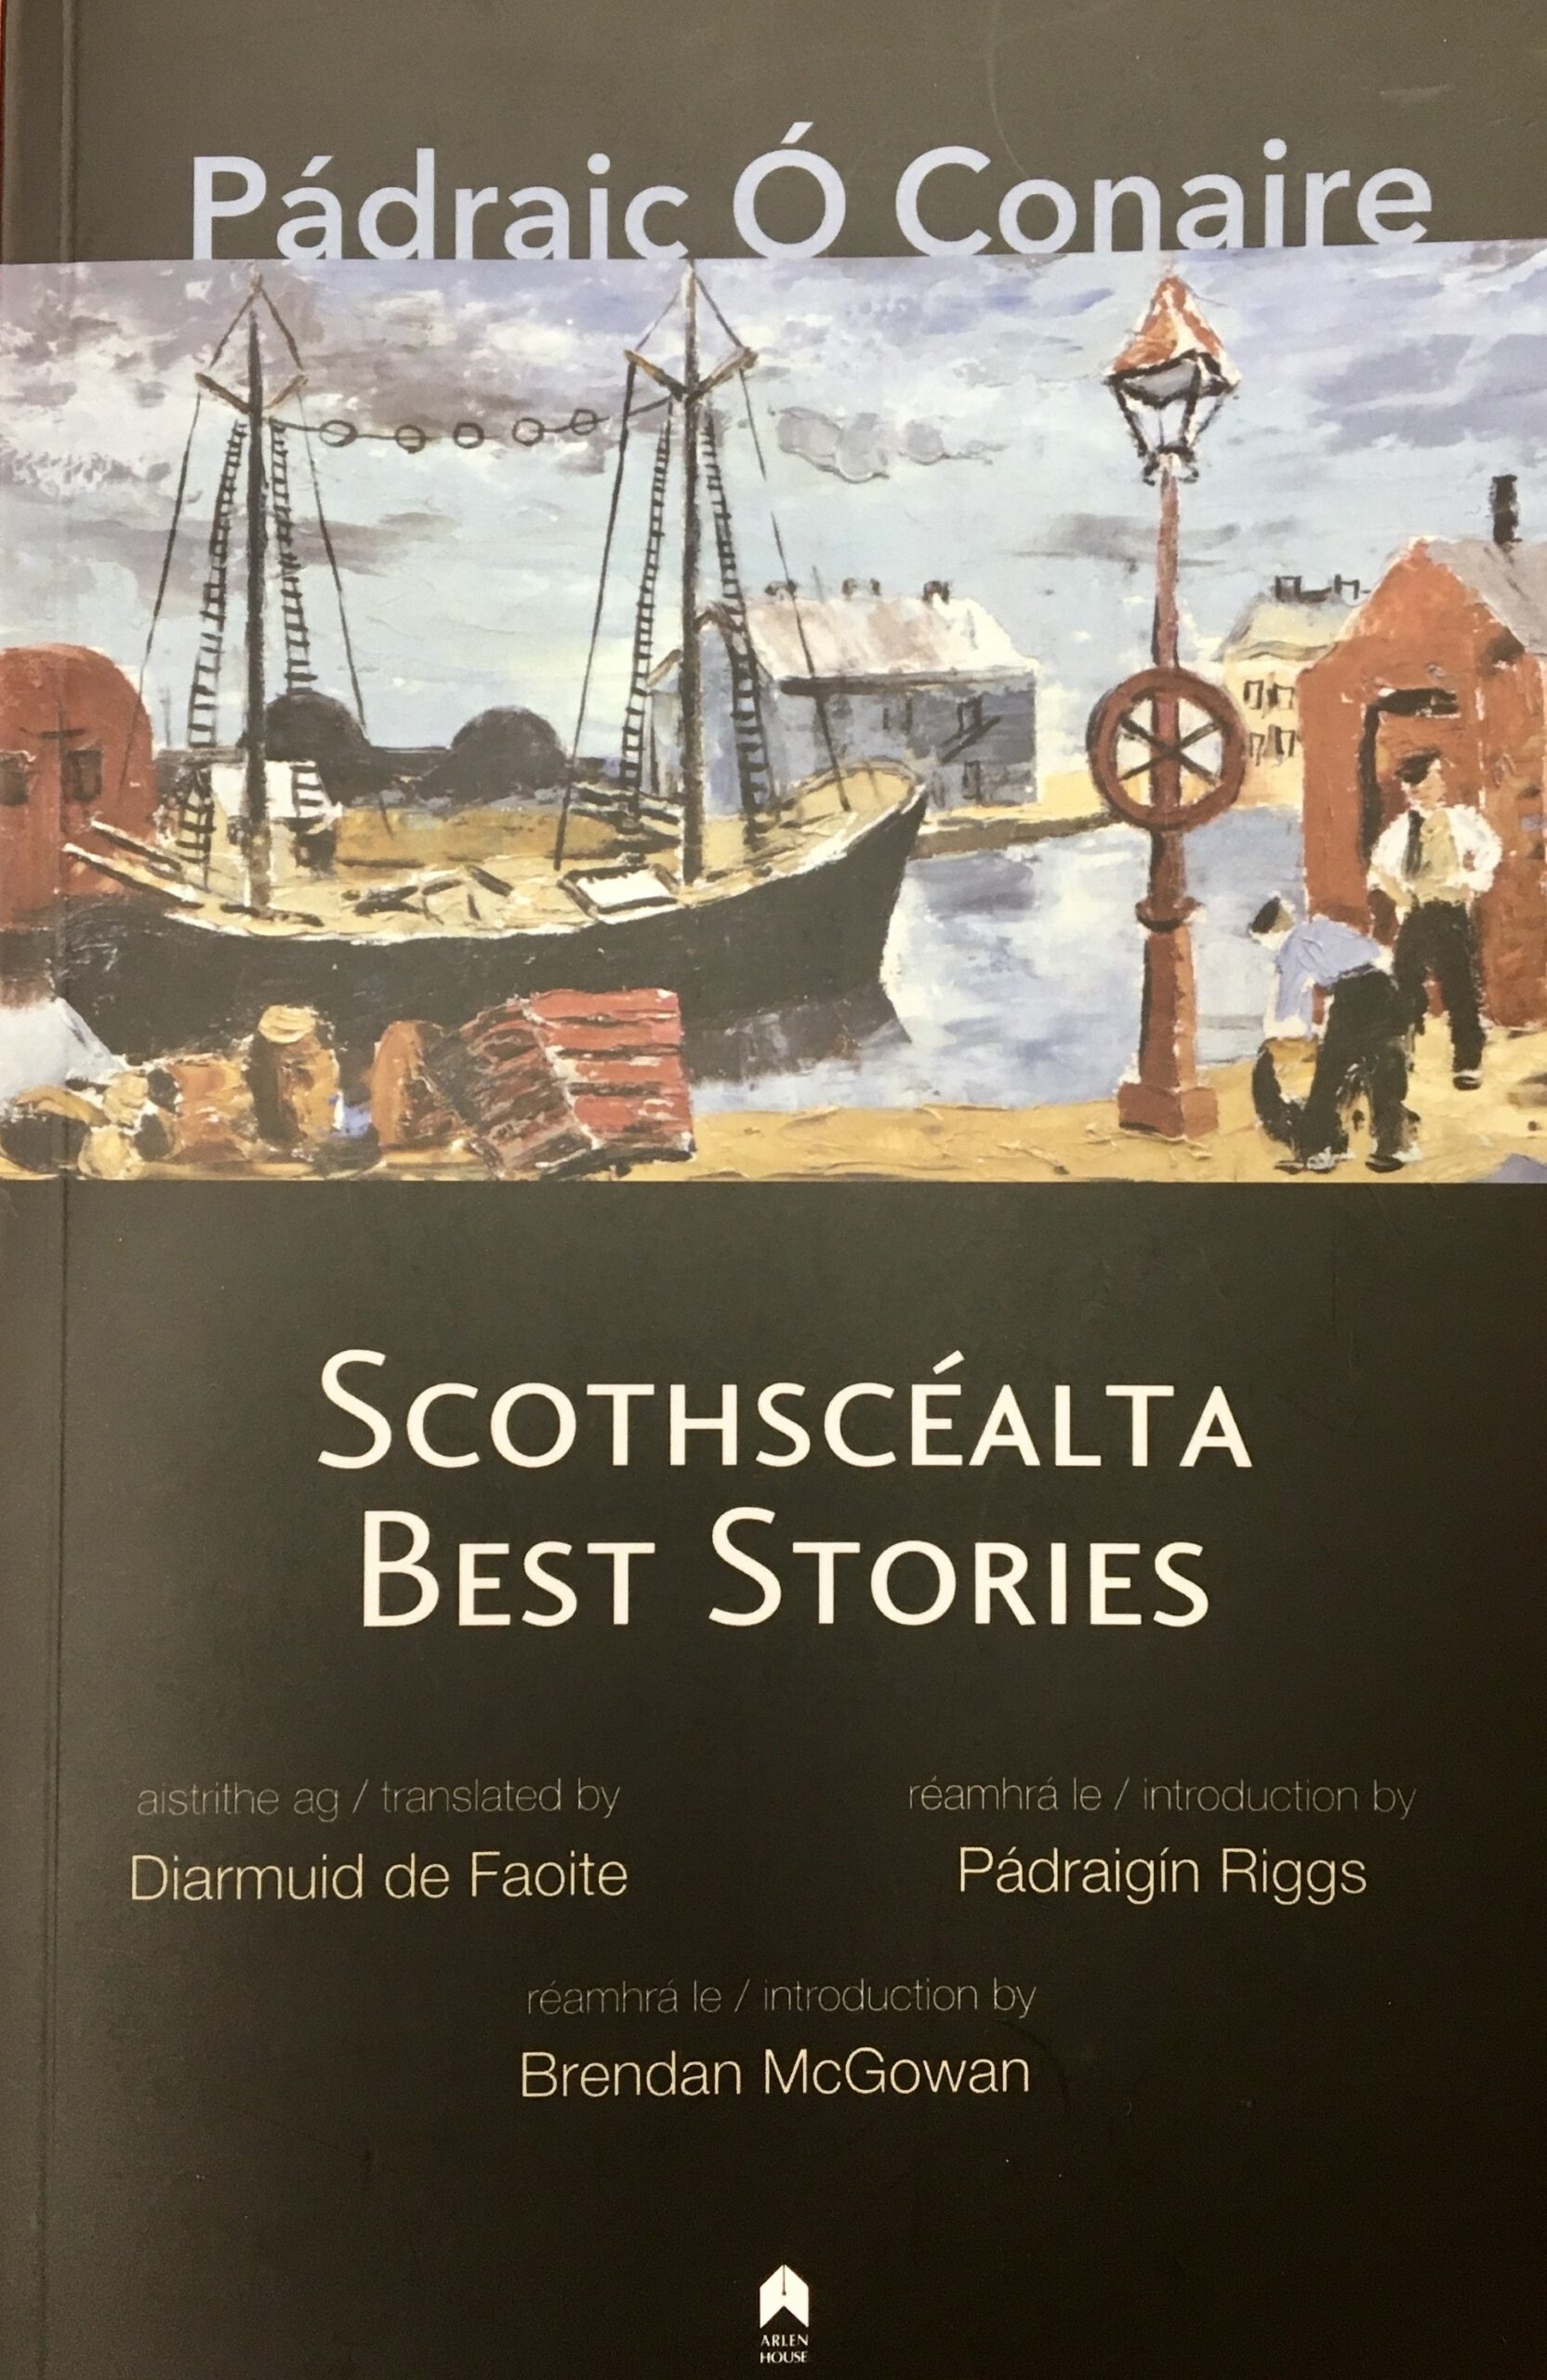 Pádraic Ó Conaire – Scothscéalta / Best Stories by Diarmuid de Faoite